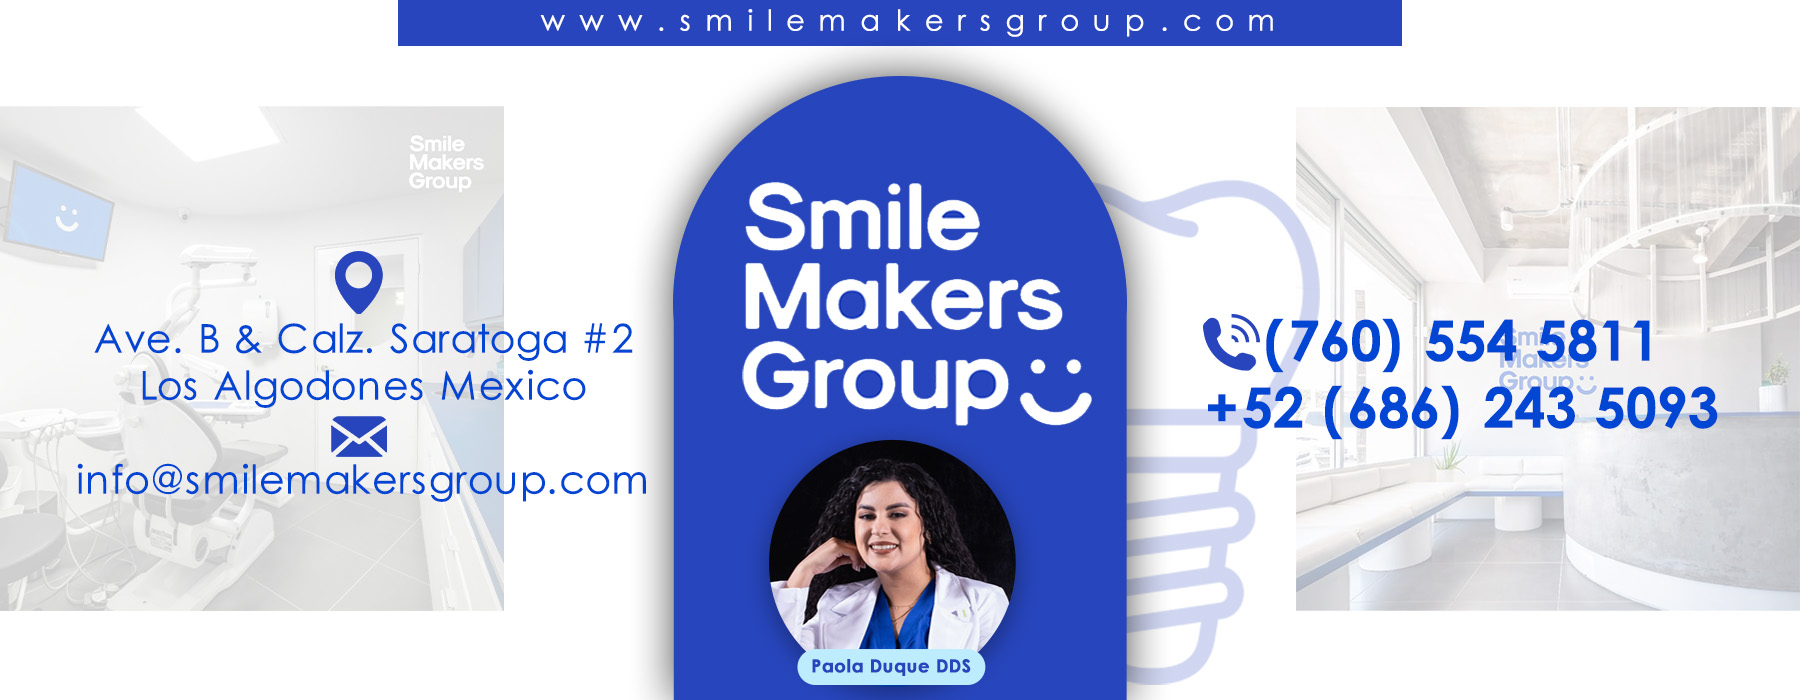  Smile Makers Paola Duque DDS